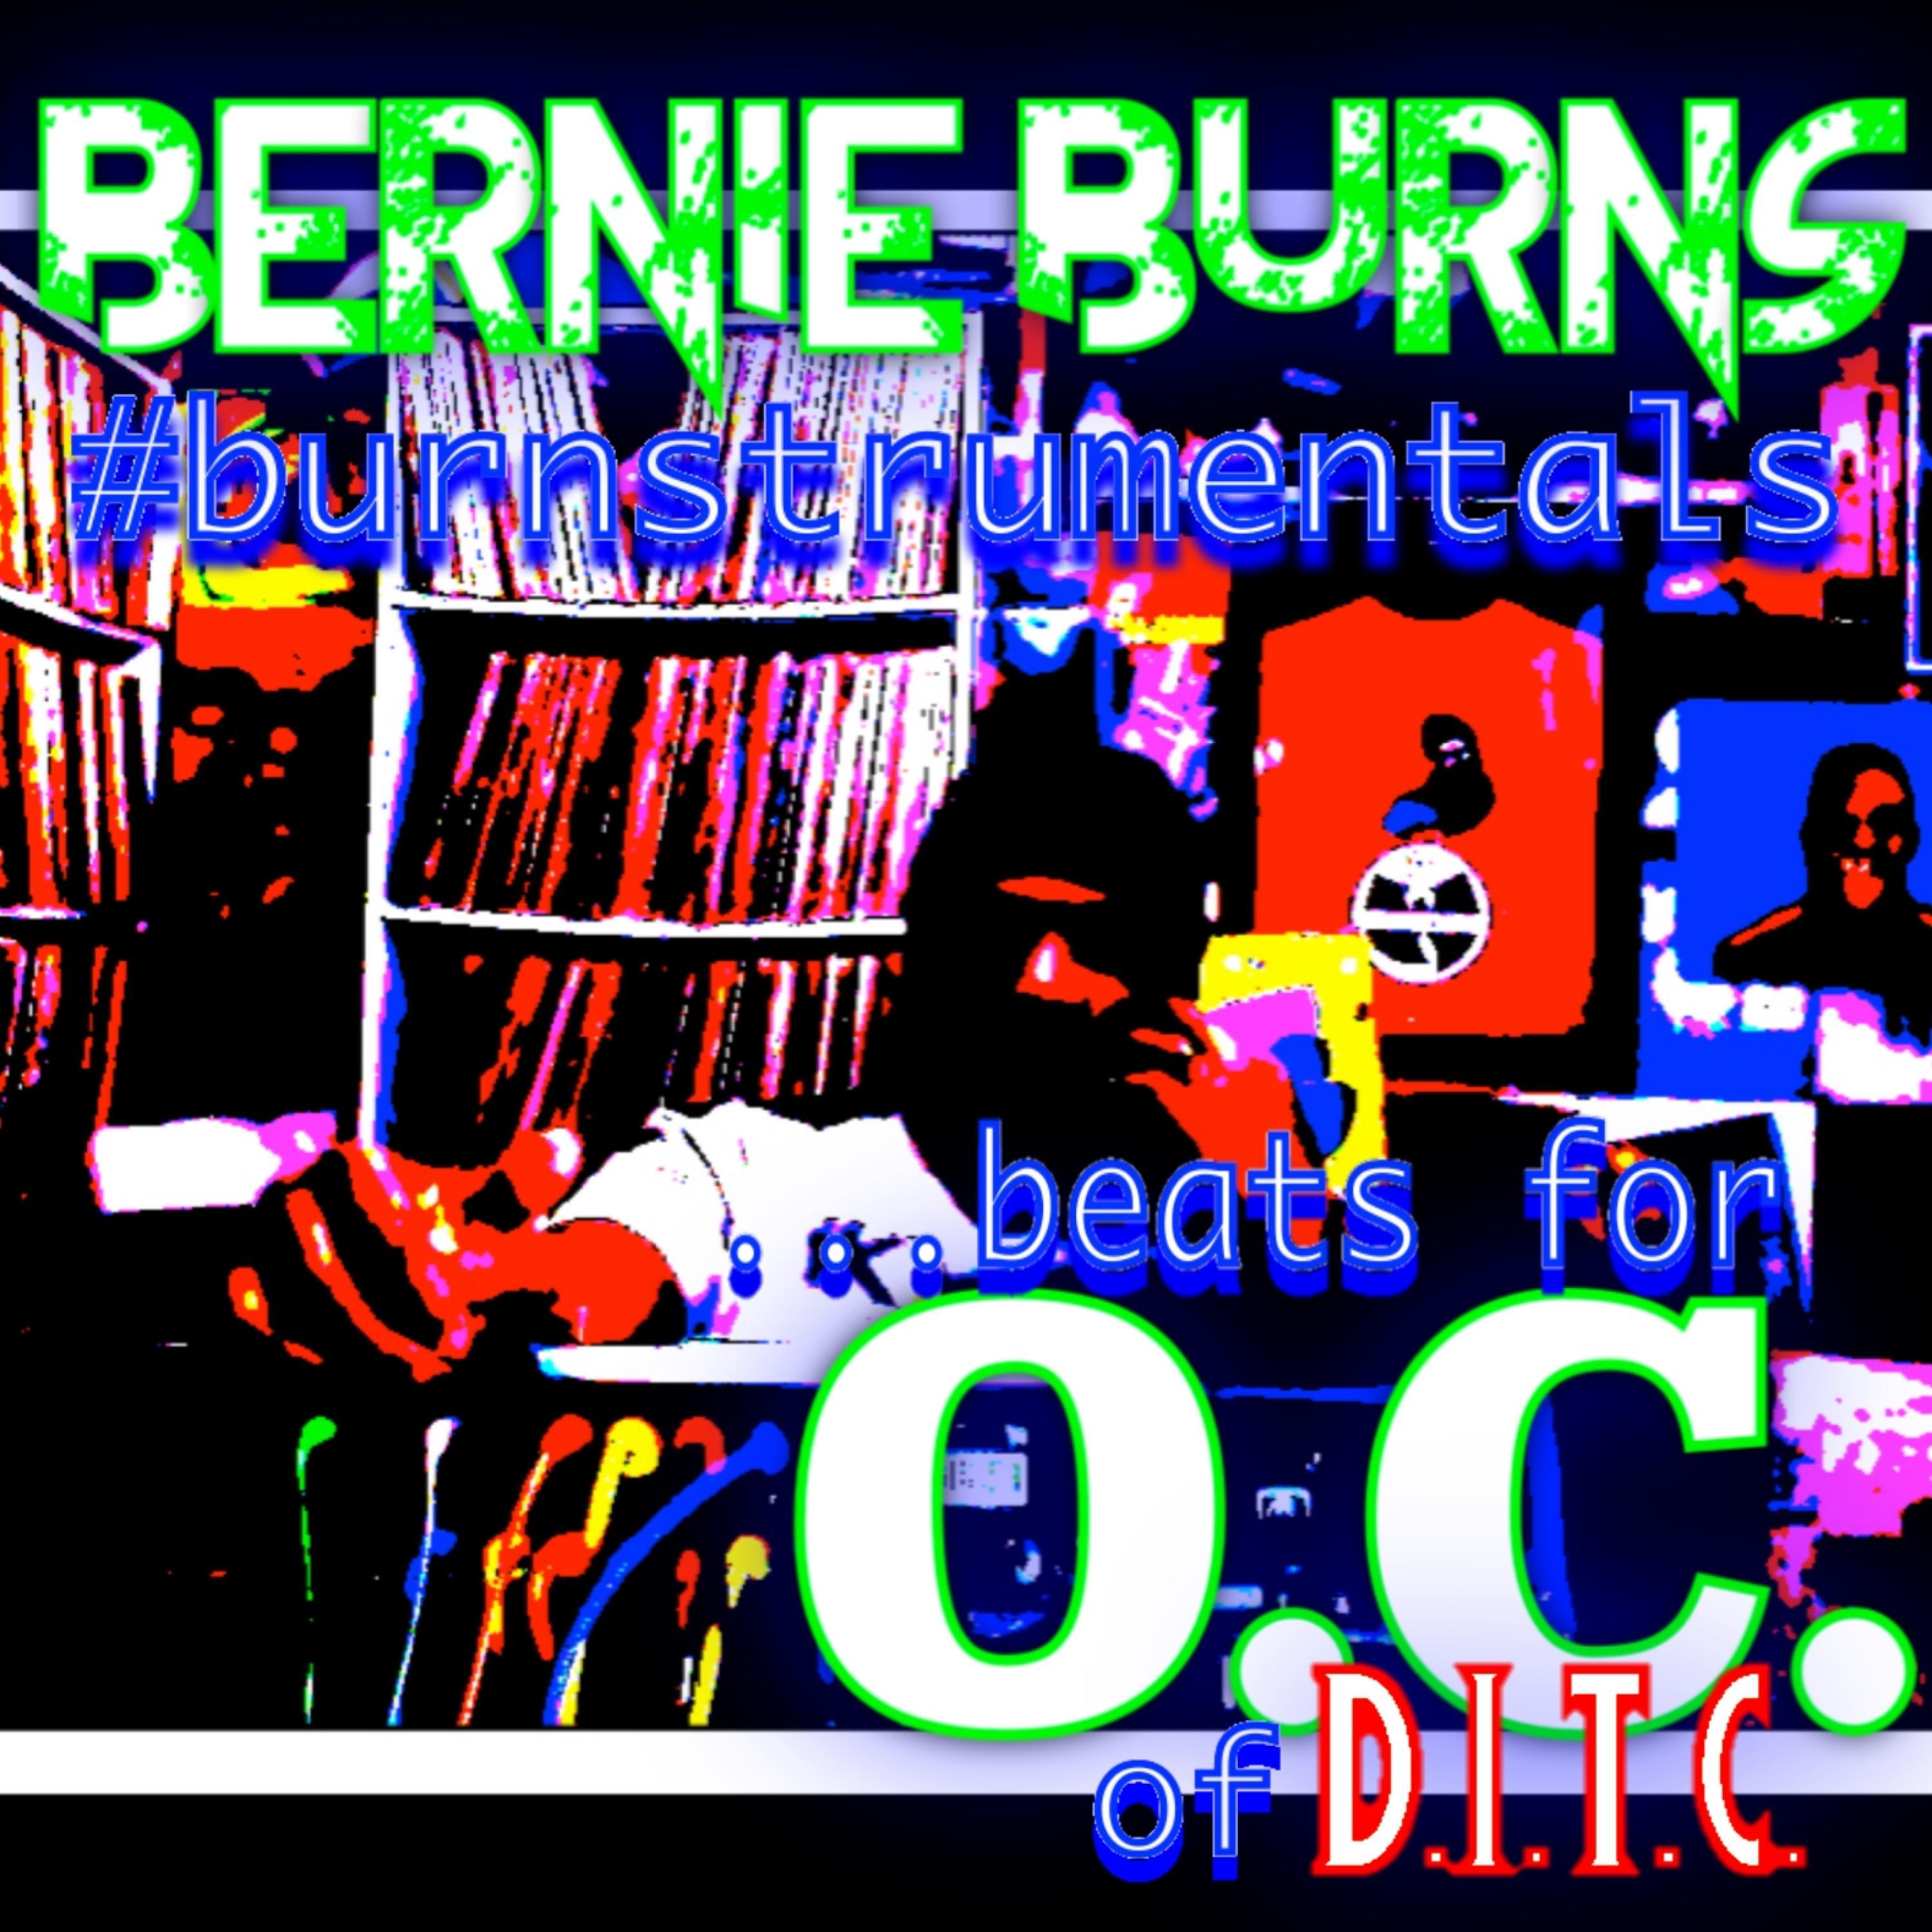 Bernie Burns - If ya feelin O.C.